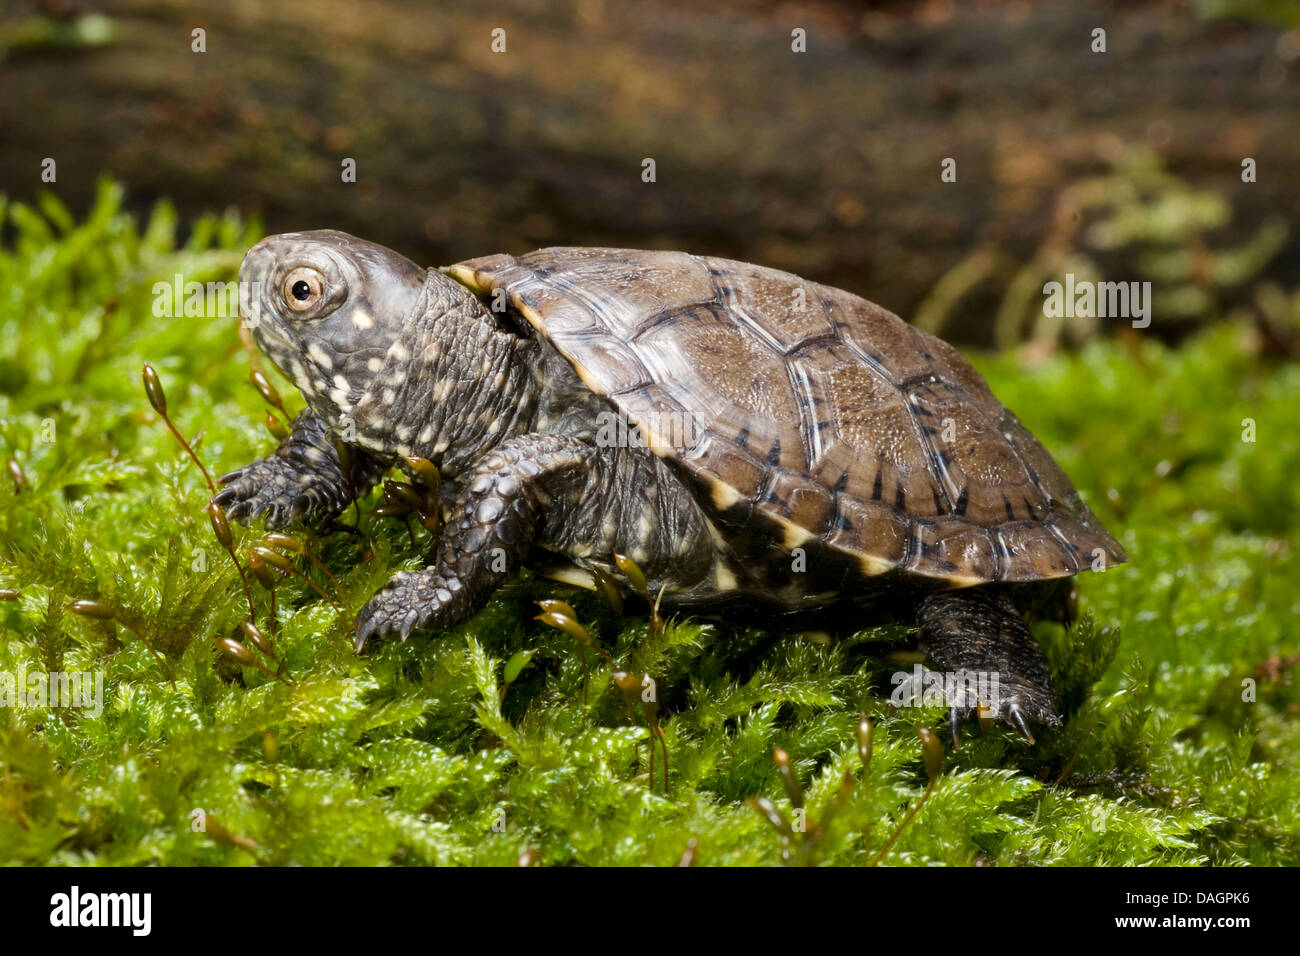 European pond terrapin, European pond turtle, European pond tortoise (Emys orbicularis), on moss Stock Photo